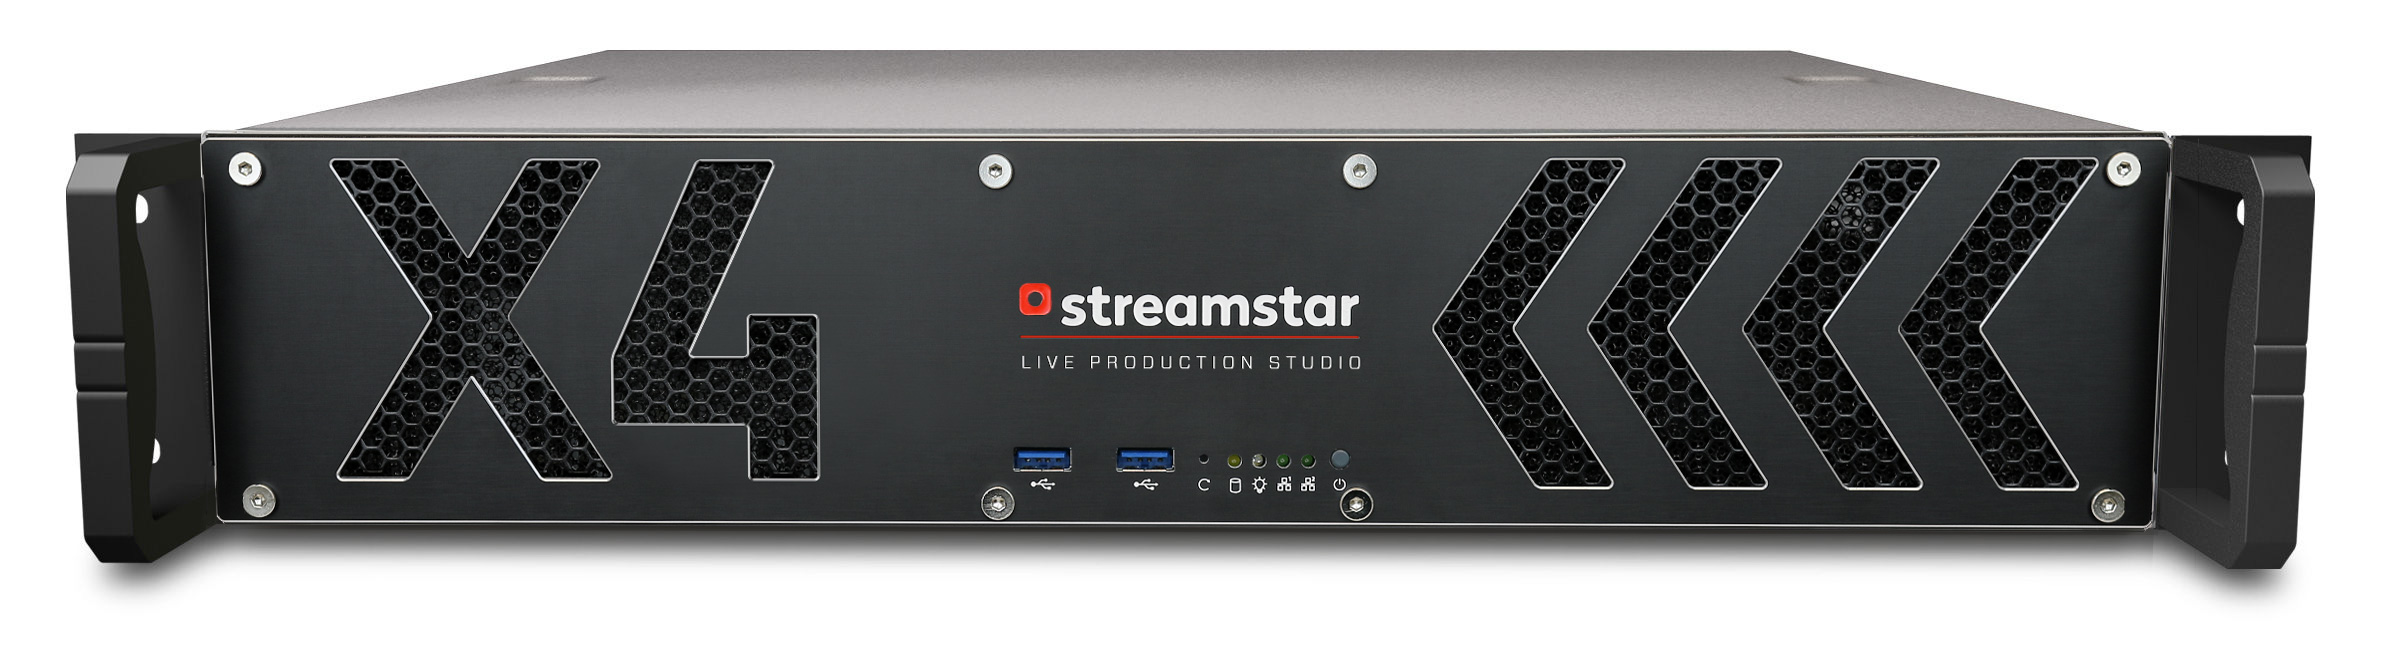 Streamstar X4